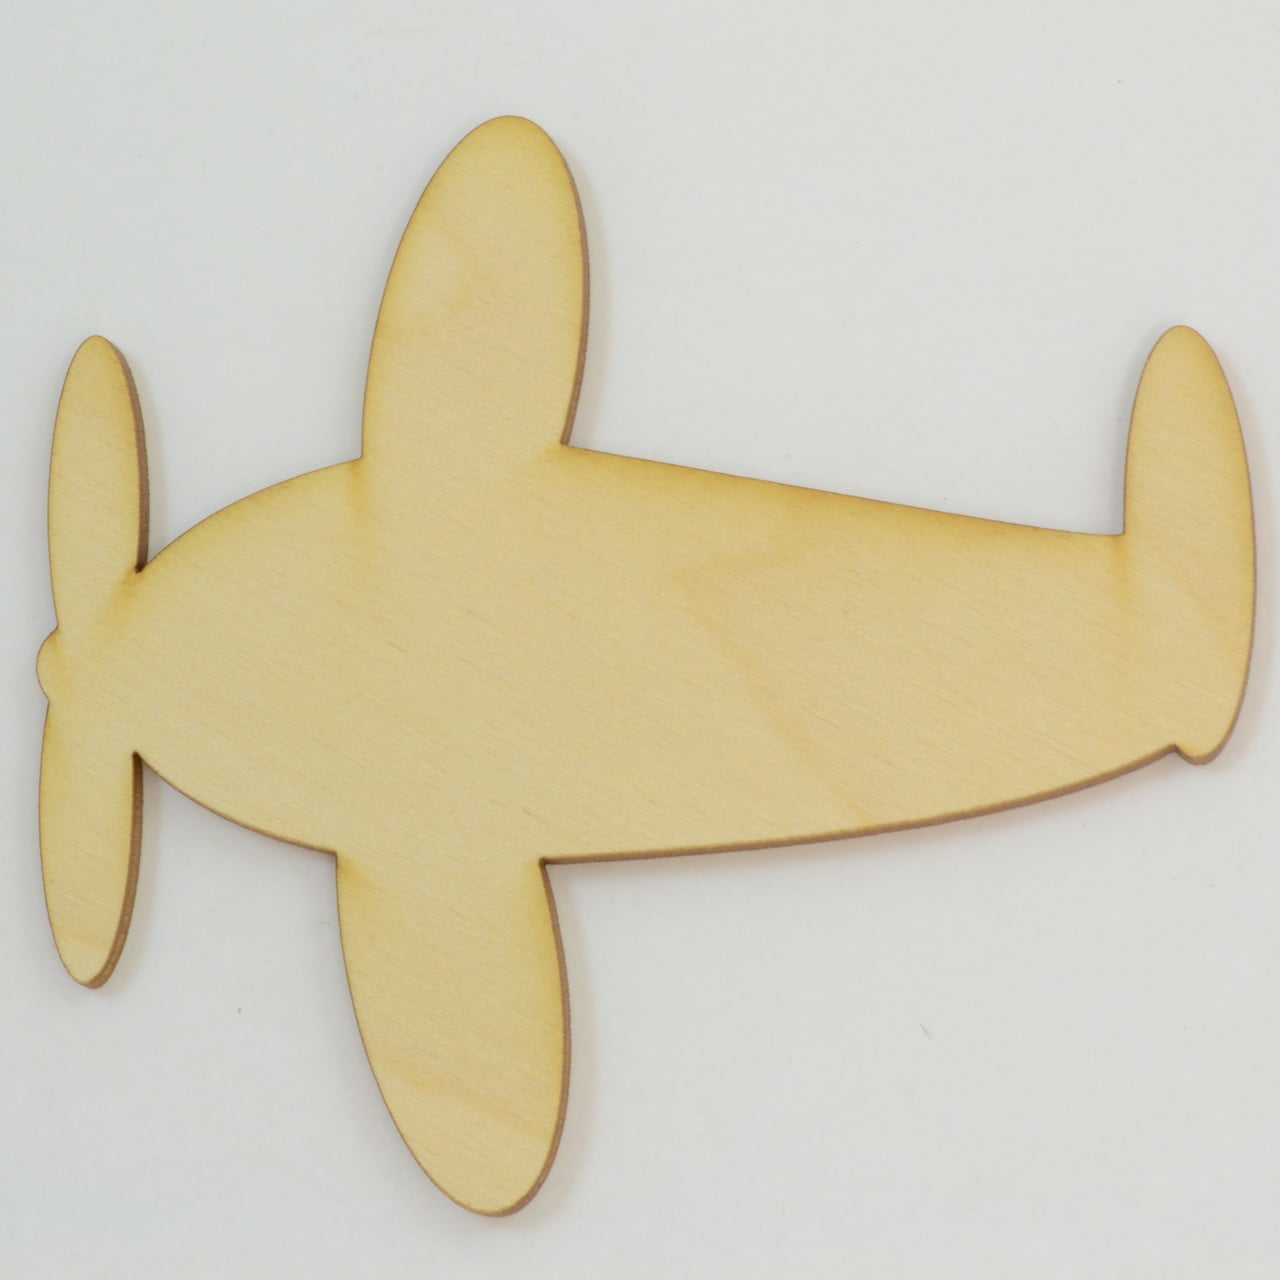 airplane-cutout-free-airplane-cutout-free-airplane-cutout-free